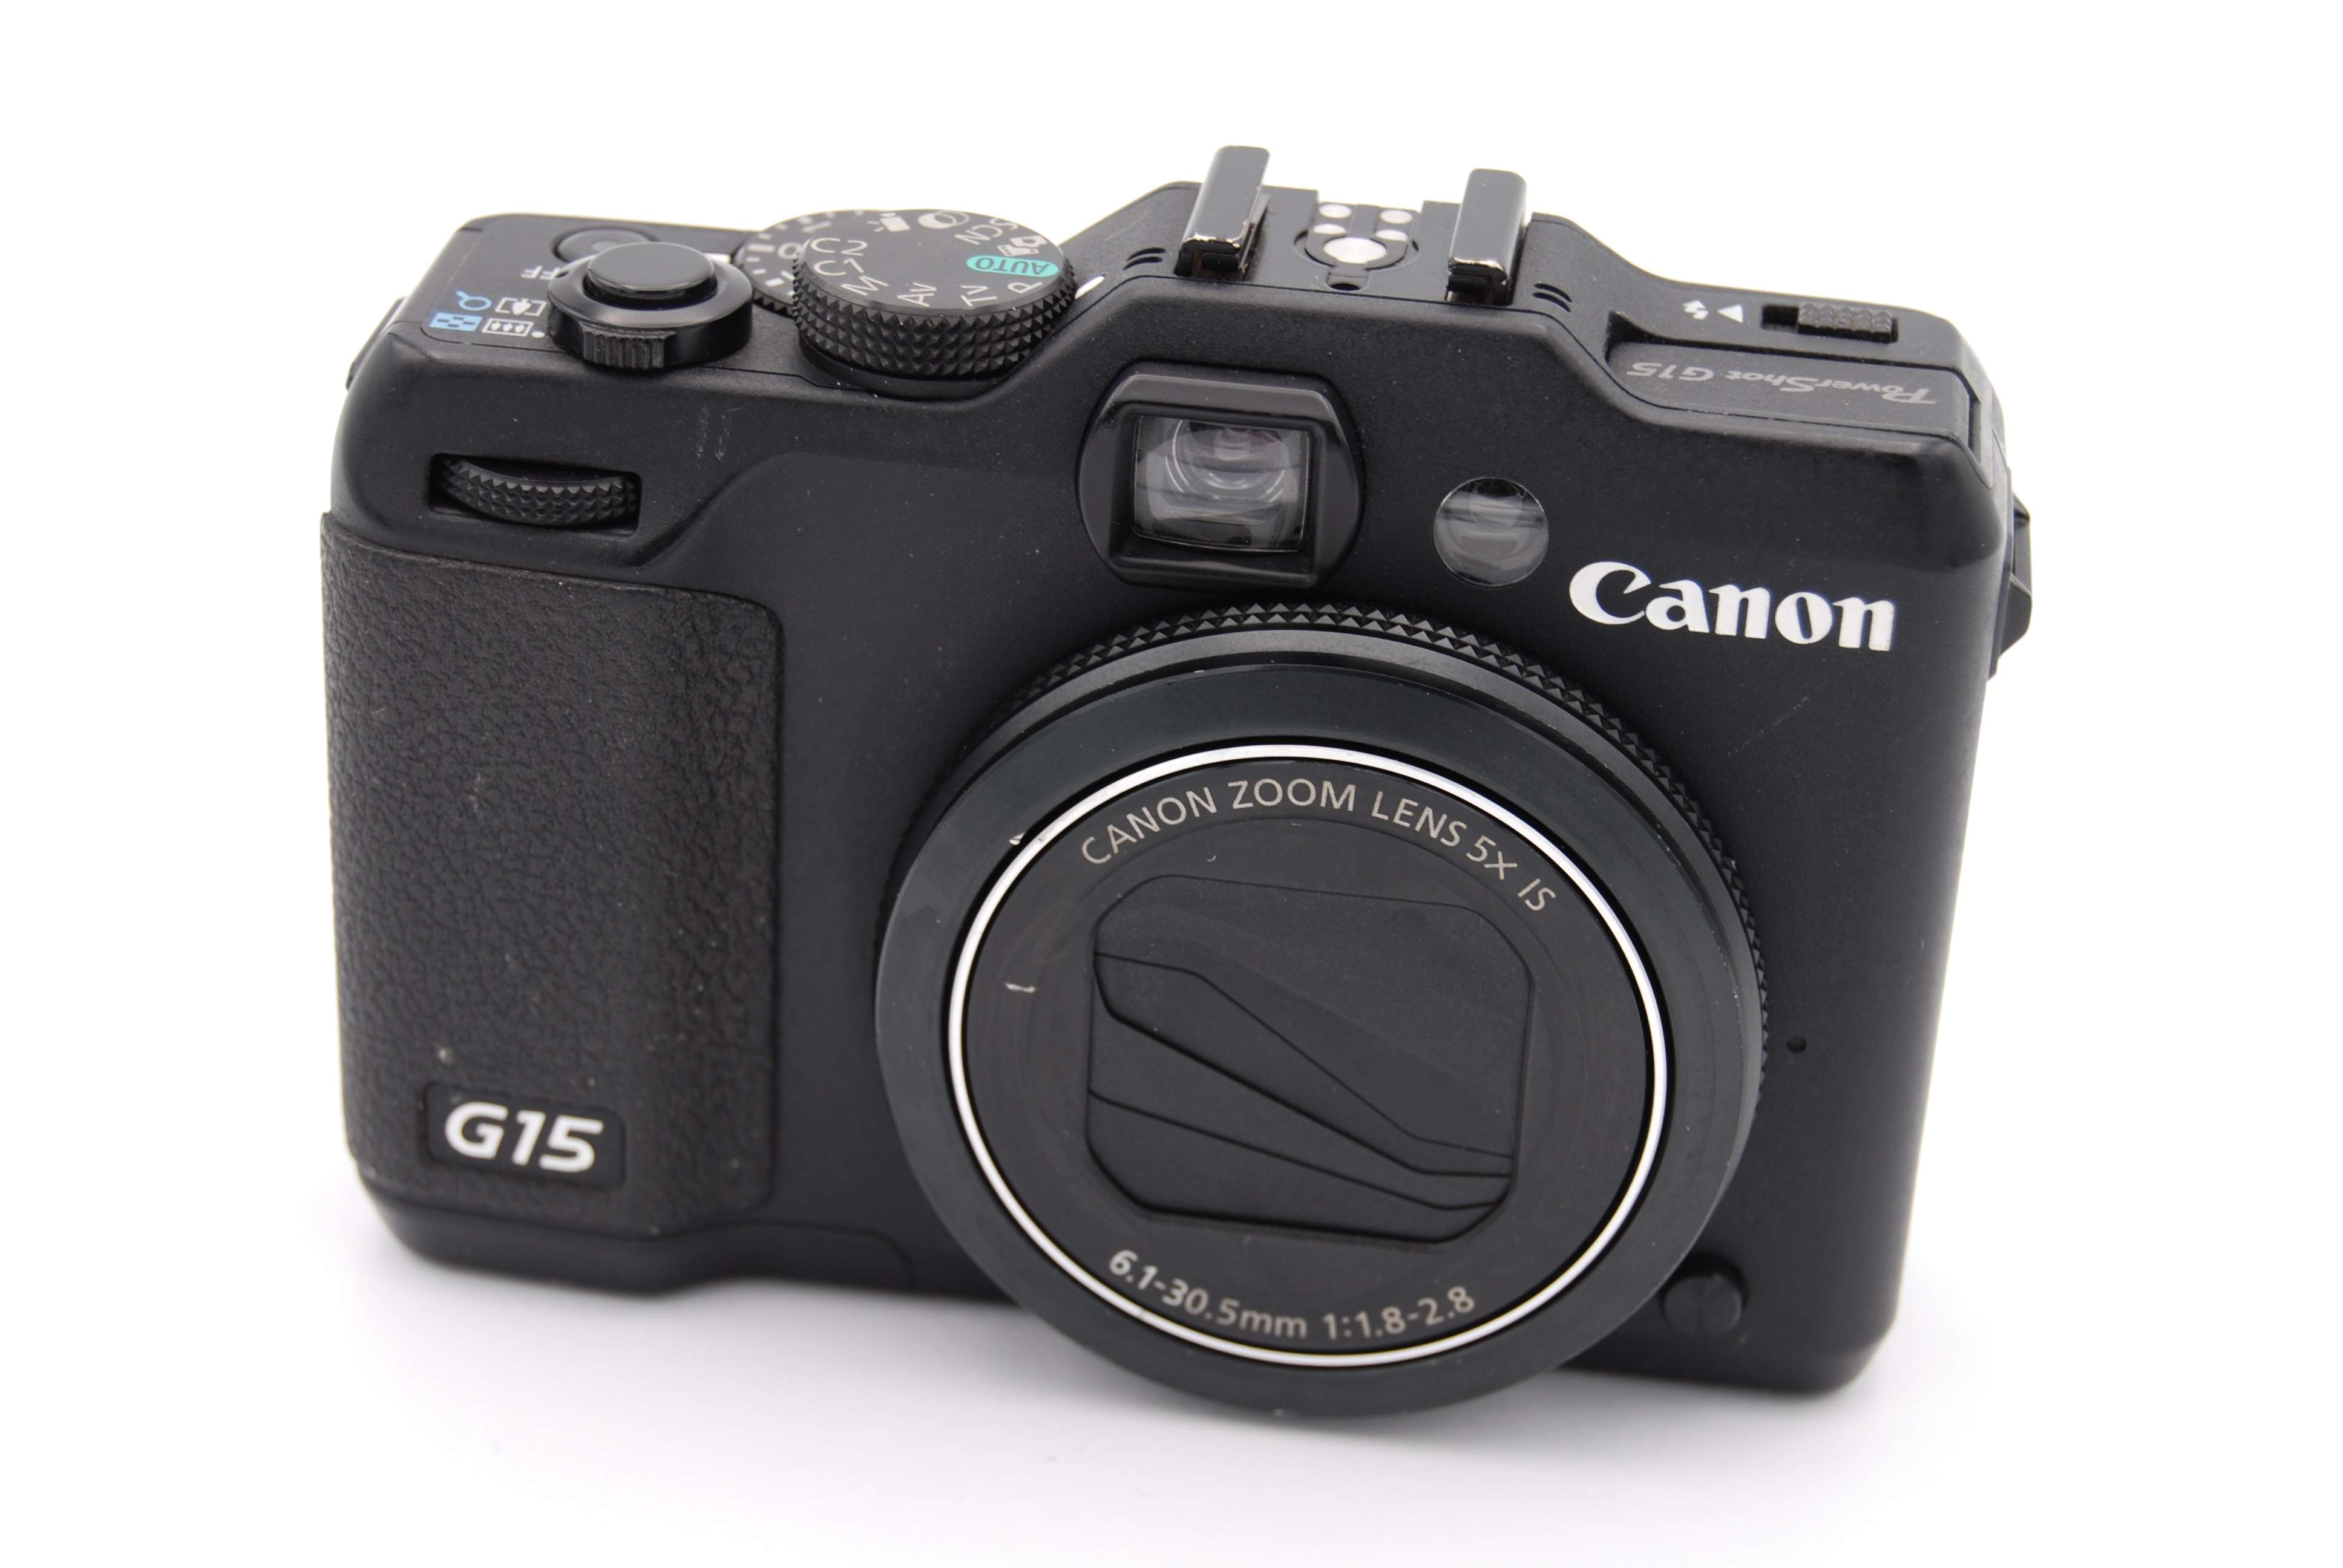 Canon Ixy 12.1 Megapixel Digital Camera